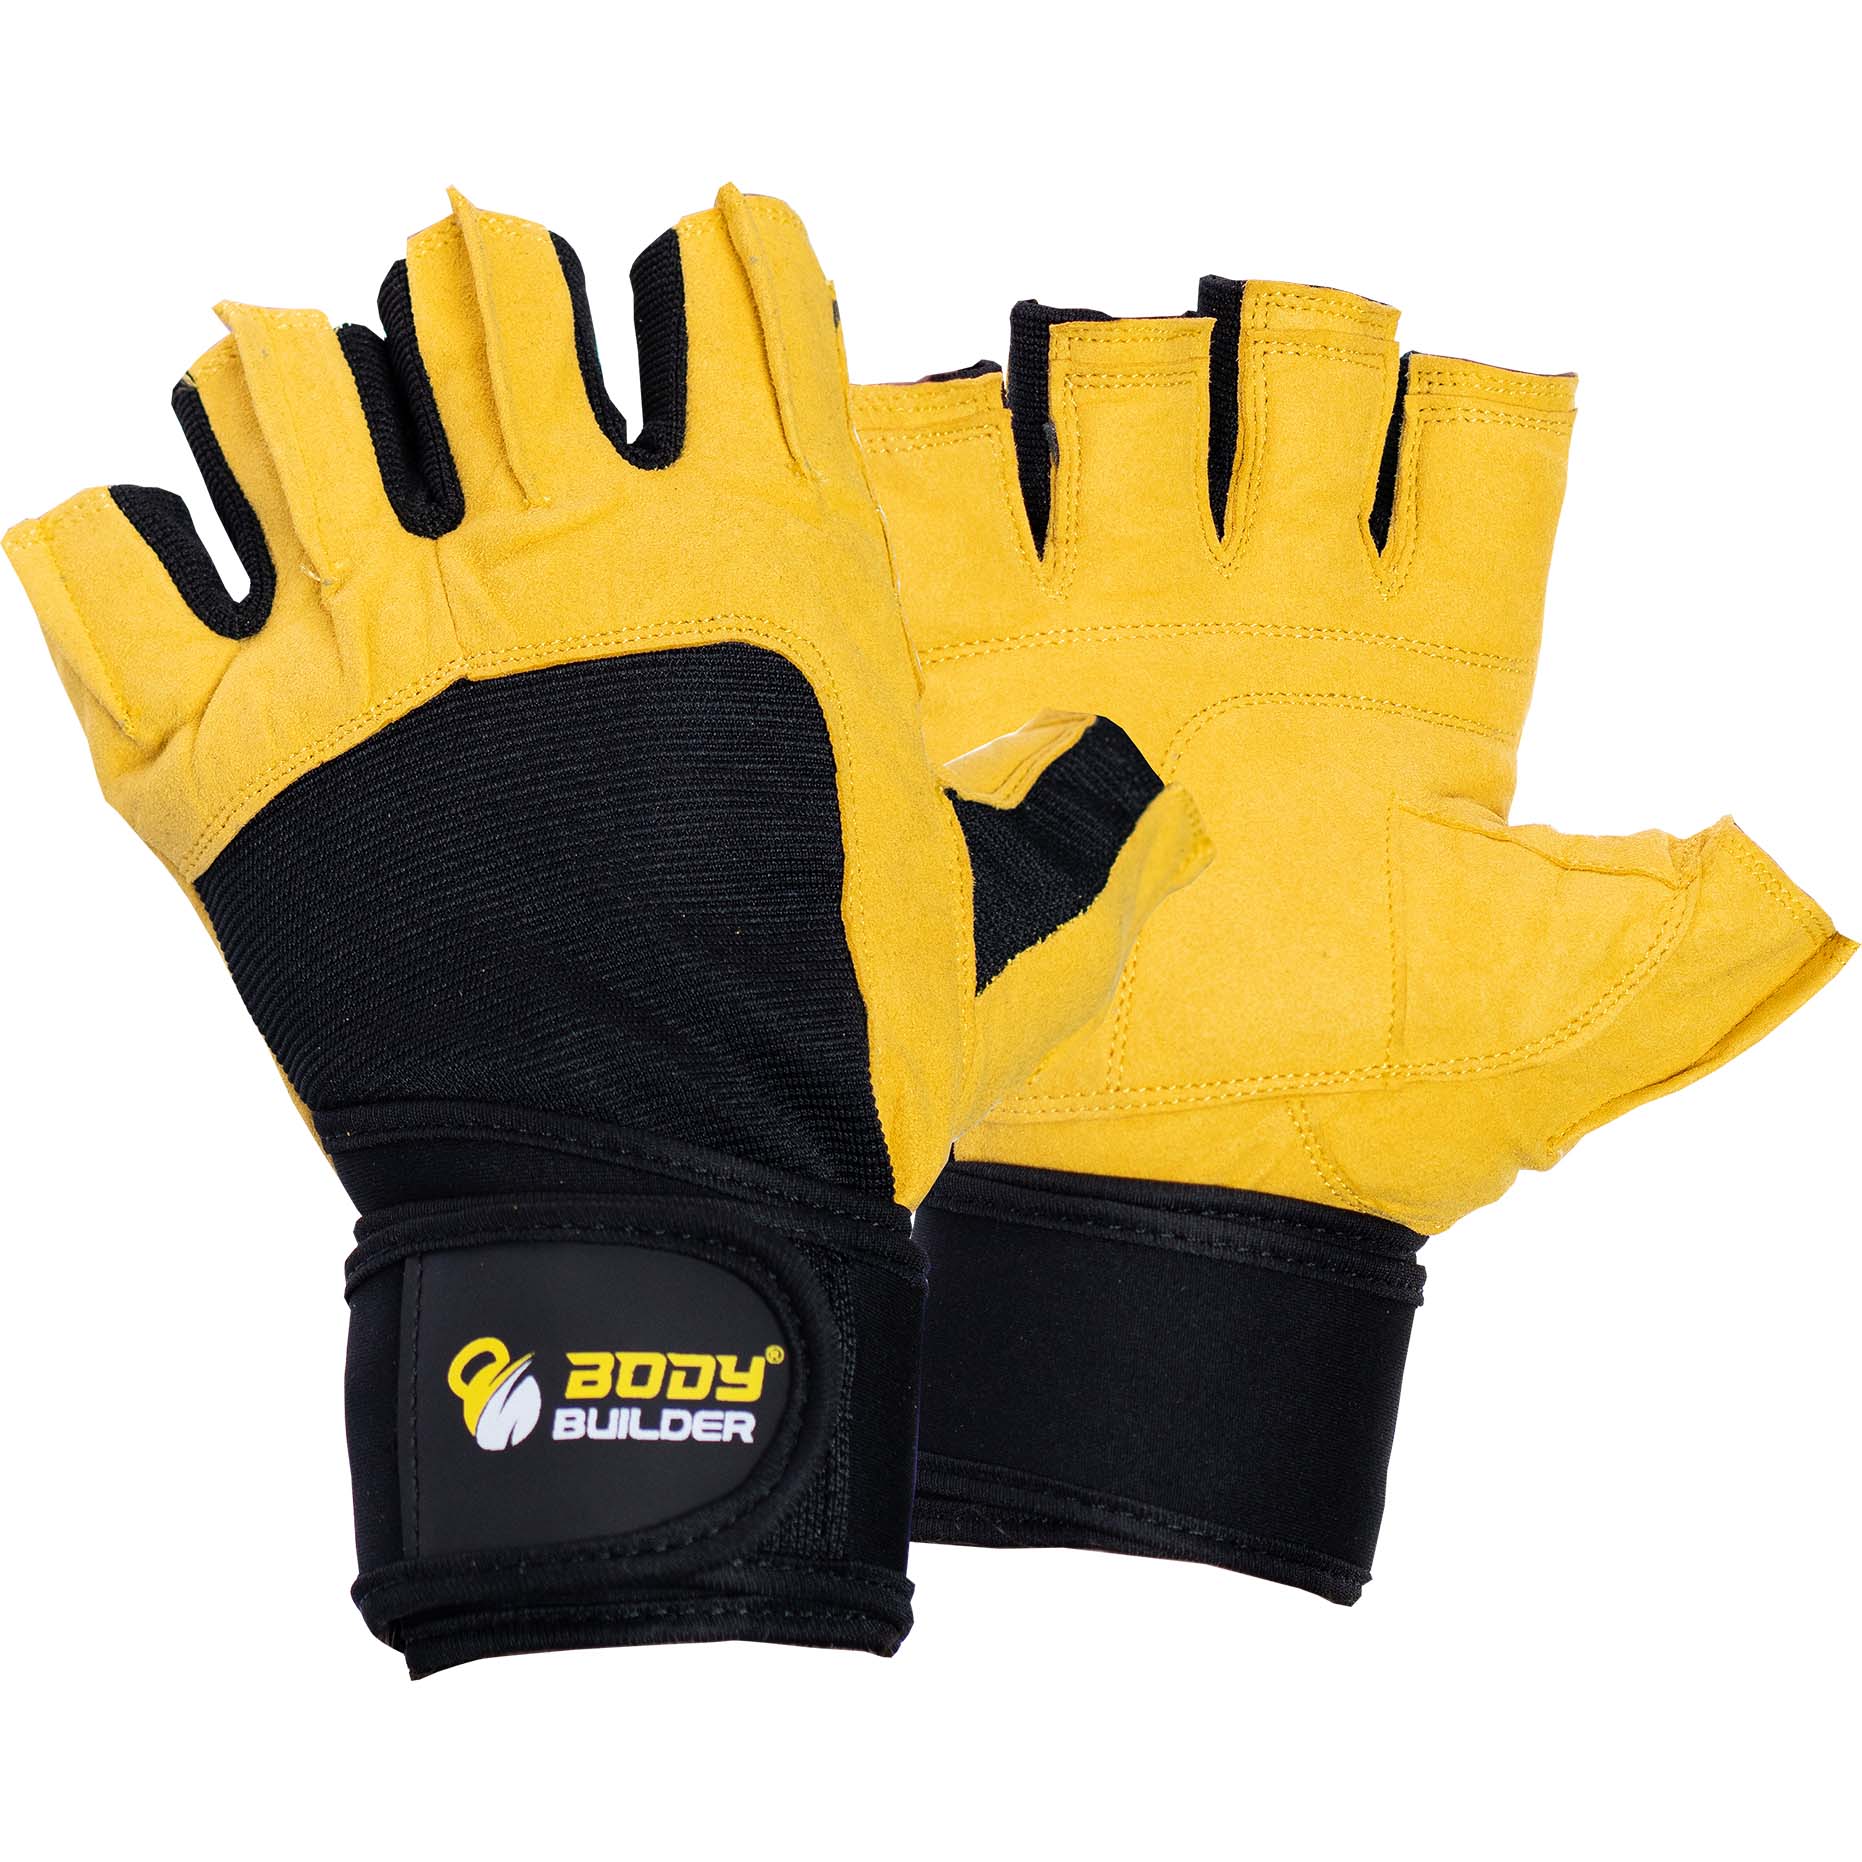 Body Builder Wrist Support Gloves, XL, Black & Yellow